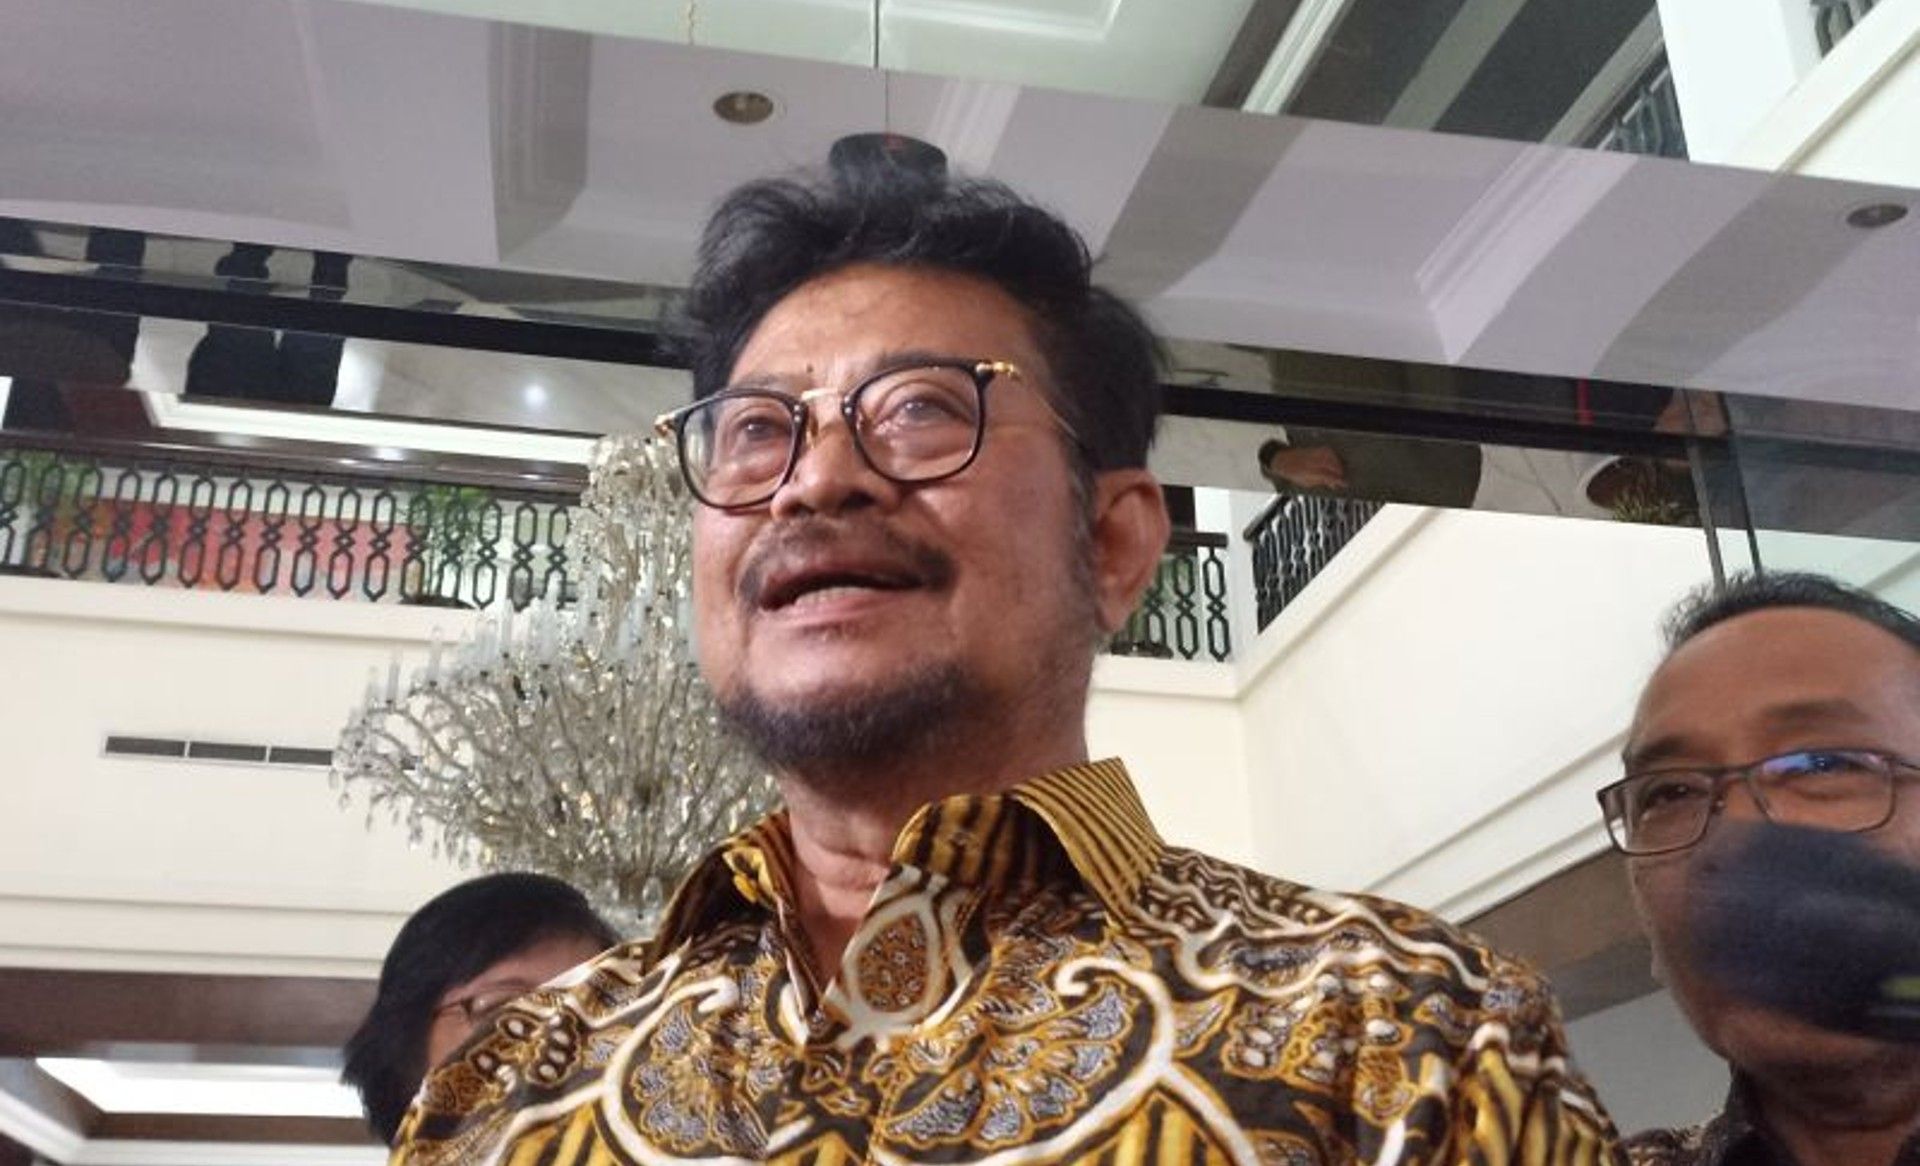 Mentan Syahrul Yasin Limpo resmi ajukan surat pengunduran diri ke Presien Jokowi